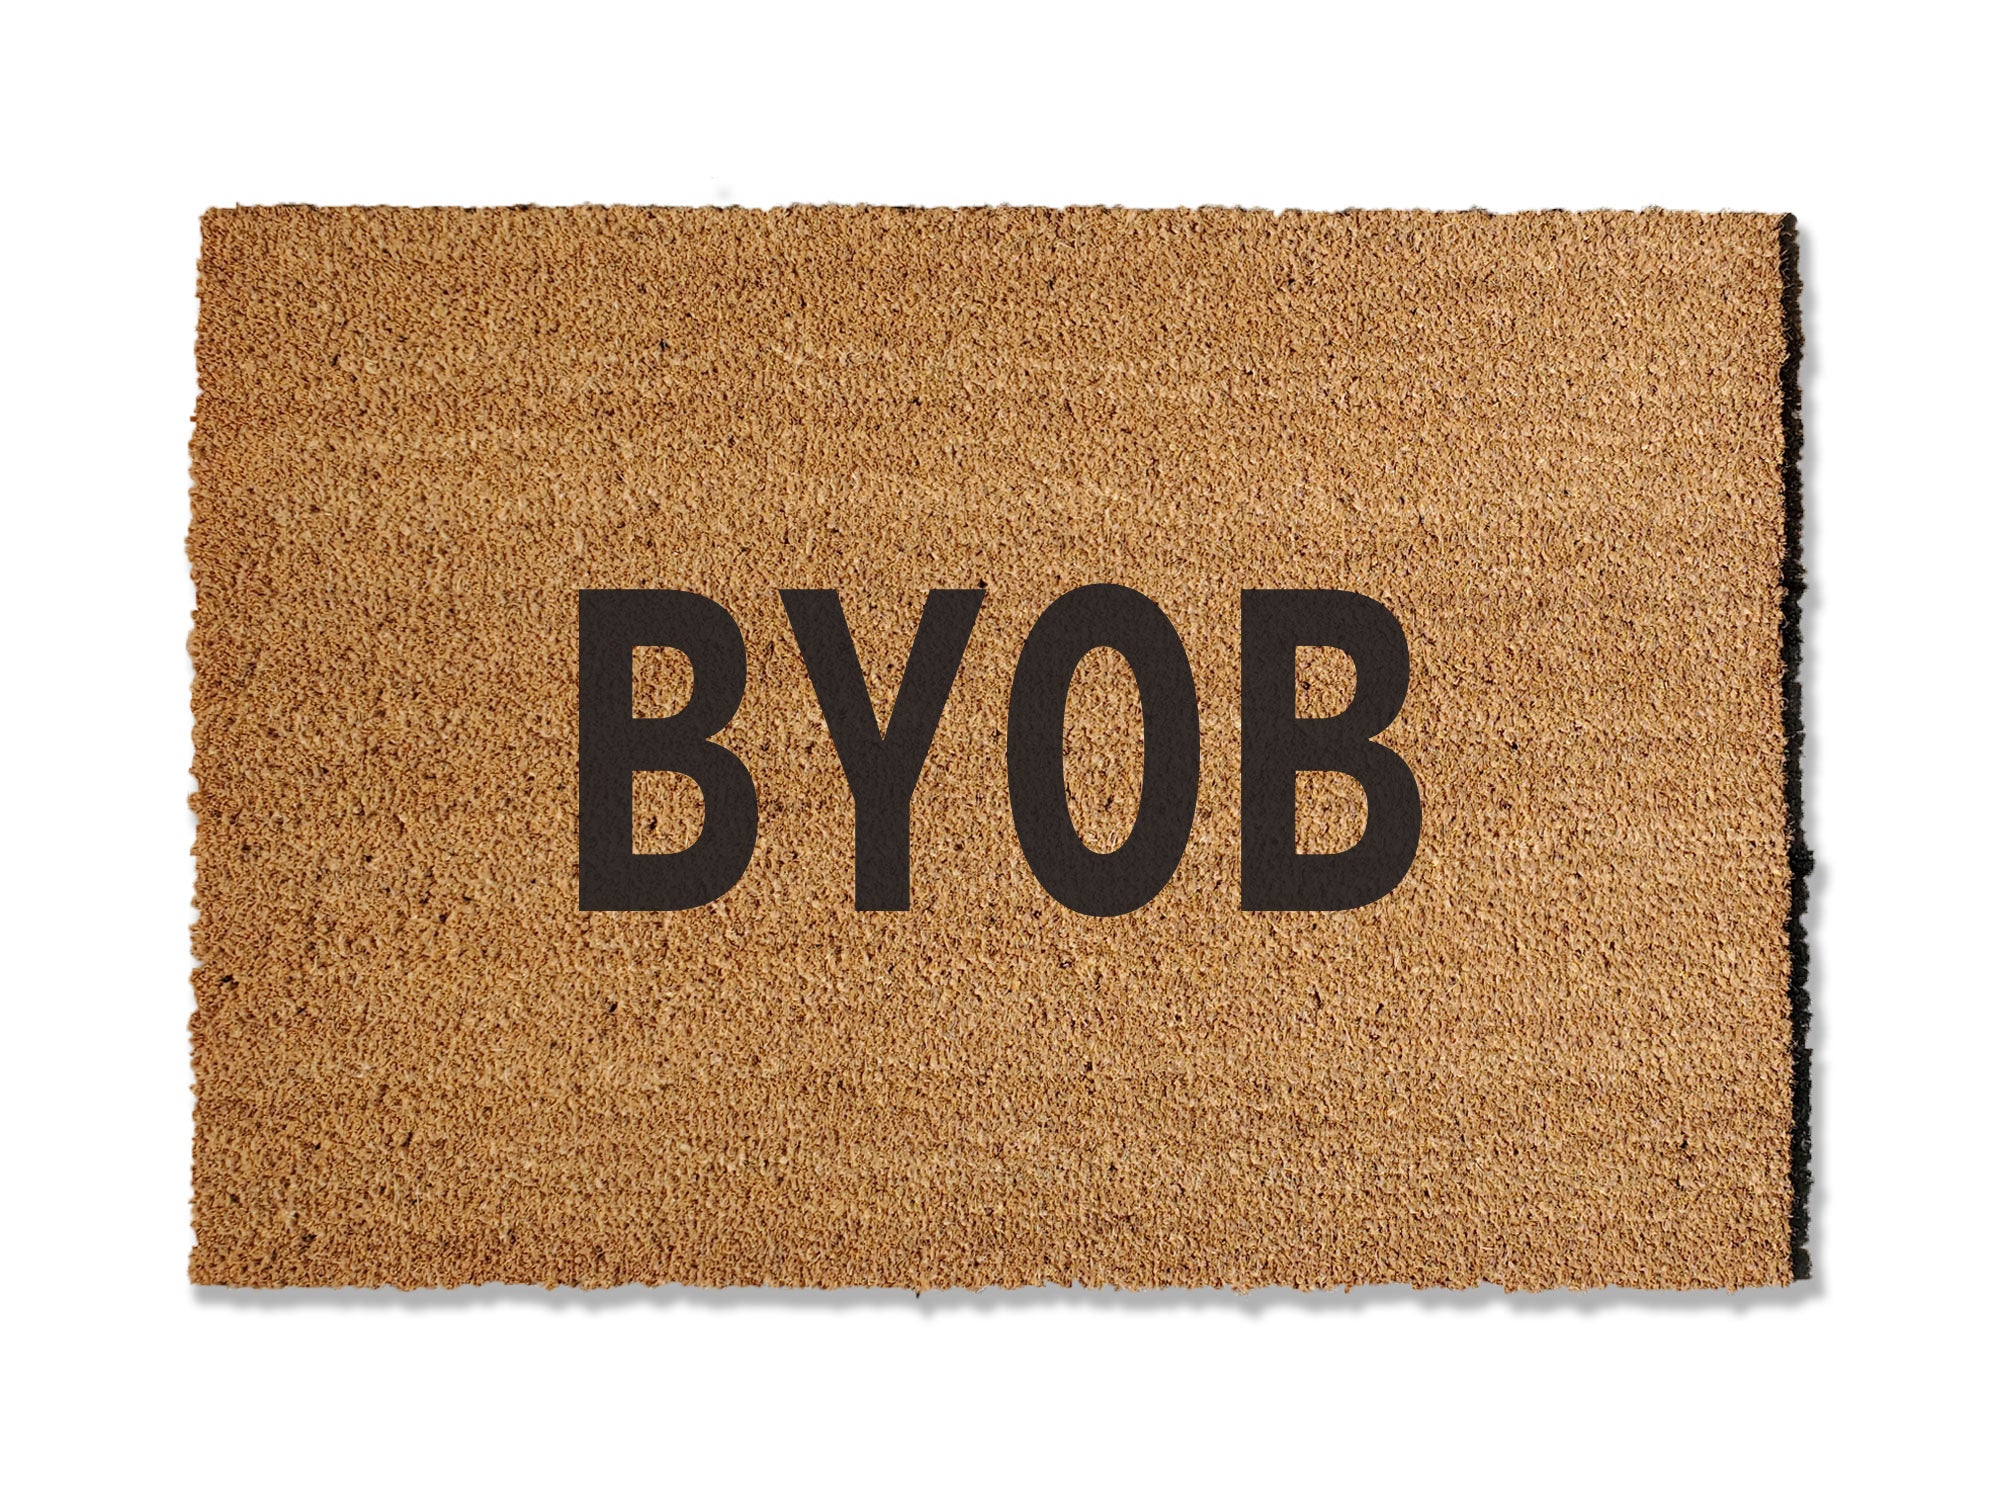 BYOB Doormat